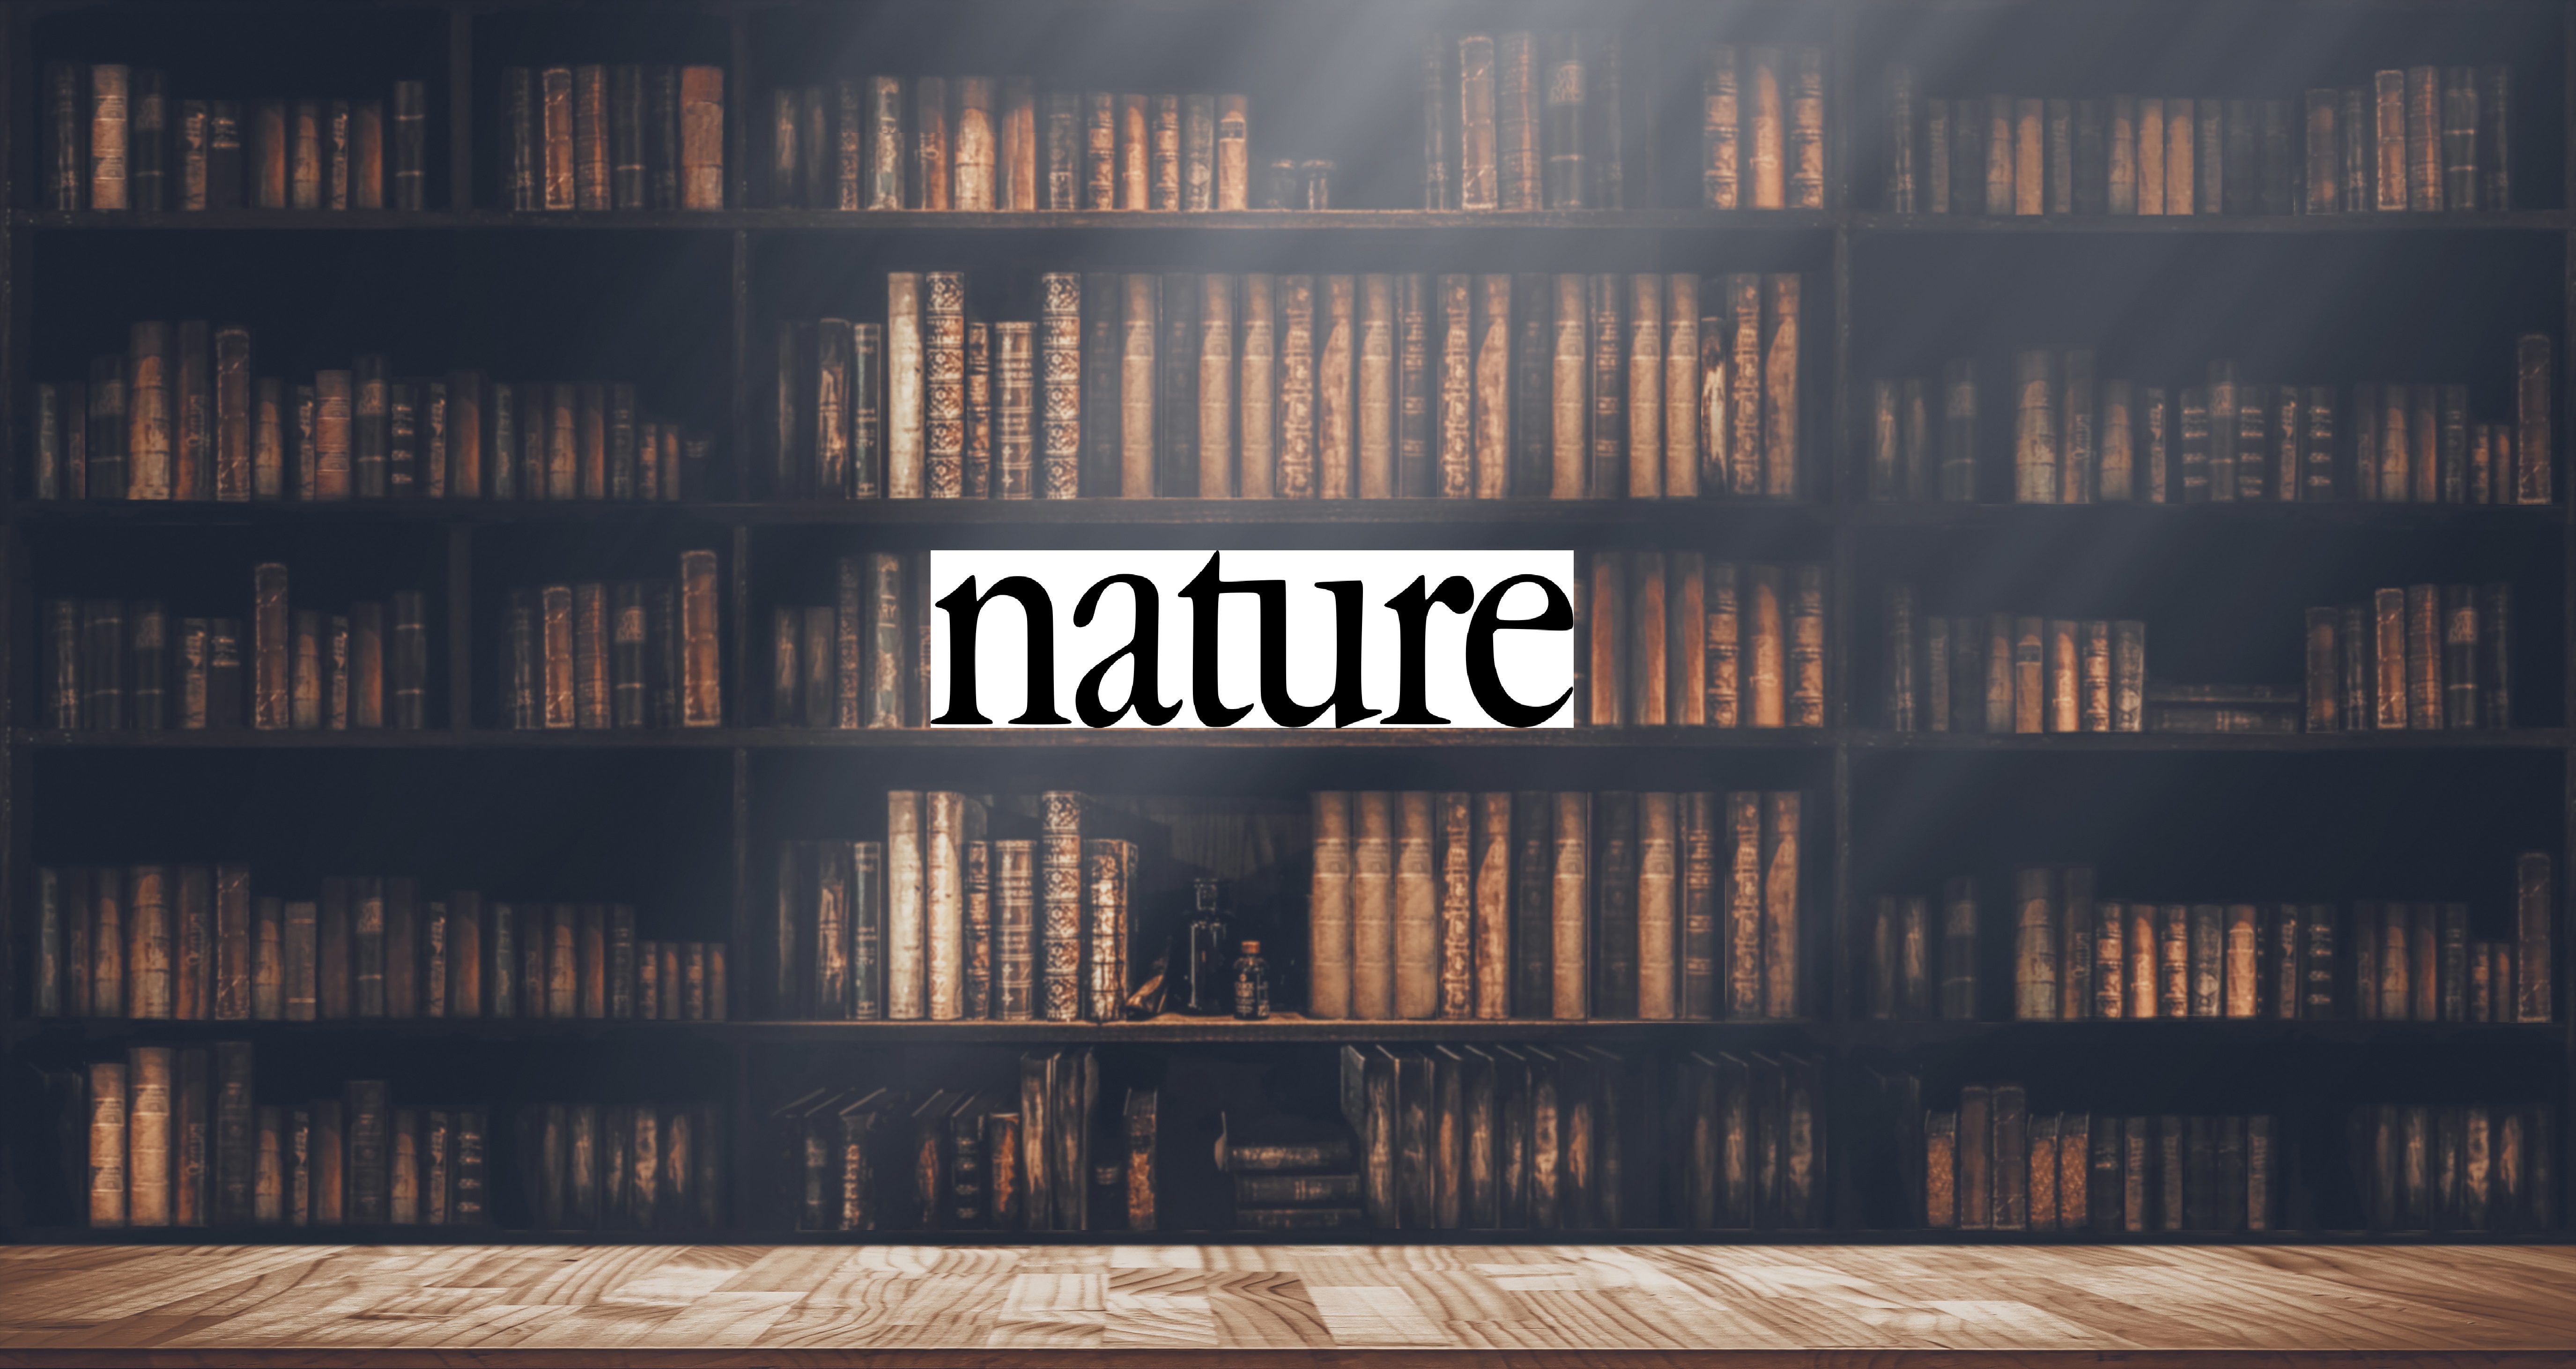 Nature Journal Morris Riedel